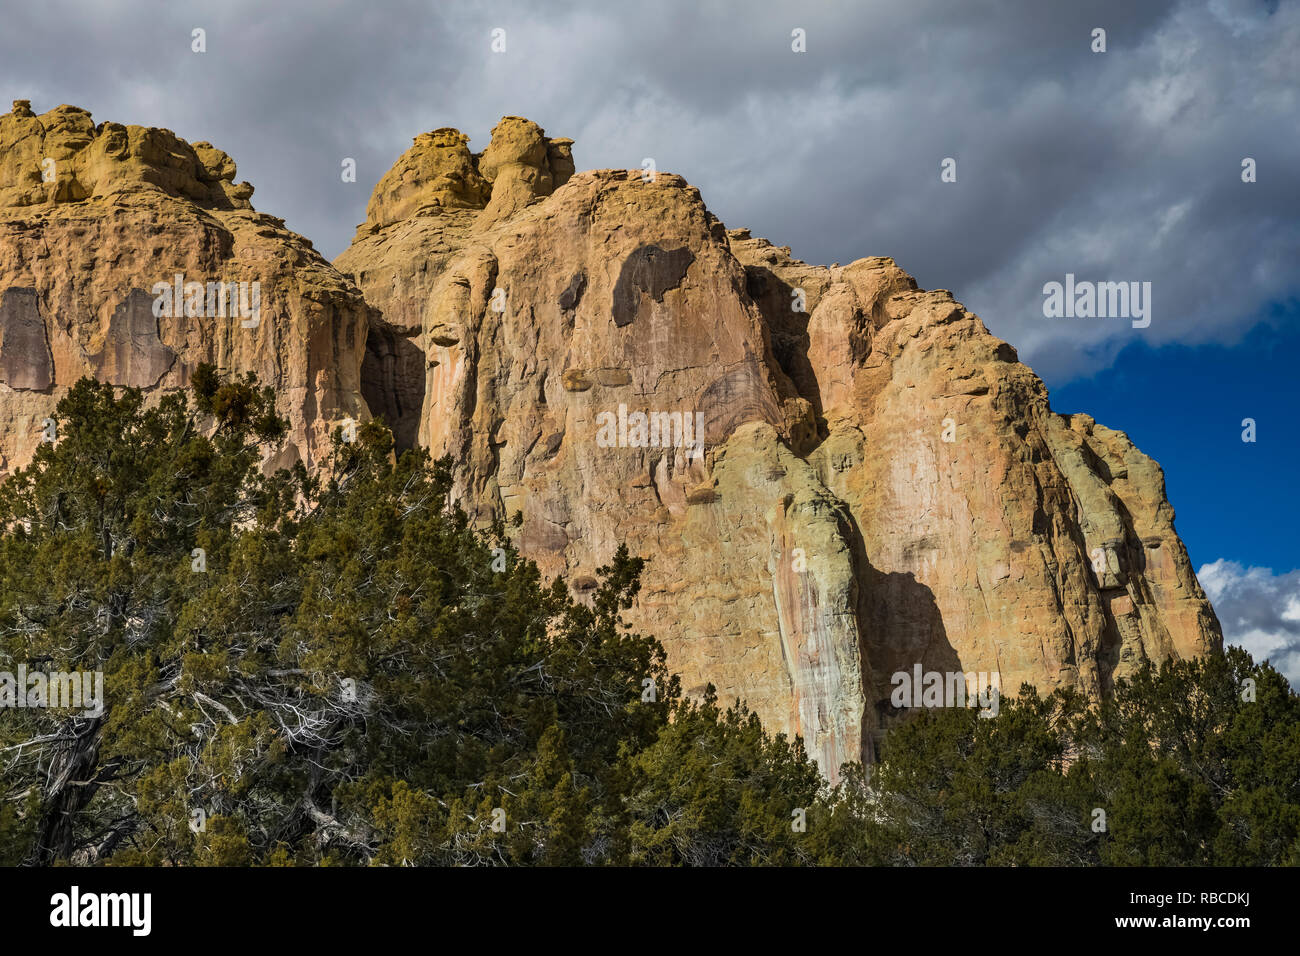 Inscription Rock domine la pinyon-genévrier forêt de El Morro National Monument, New Mexico, USA Banque D'Images